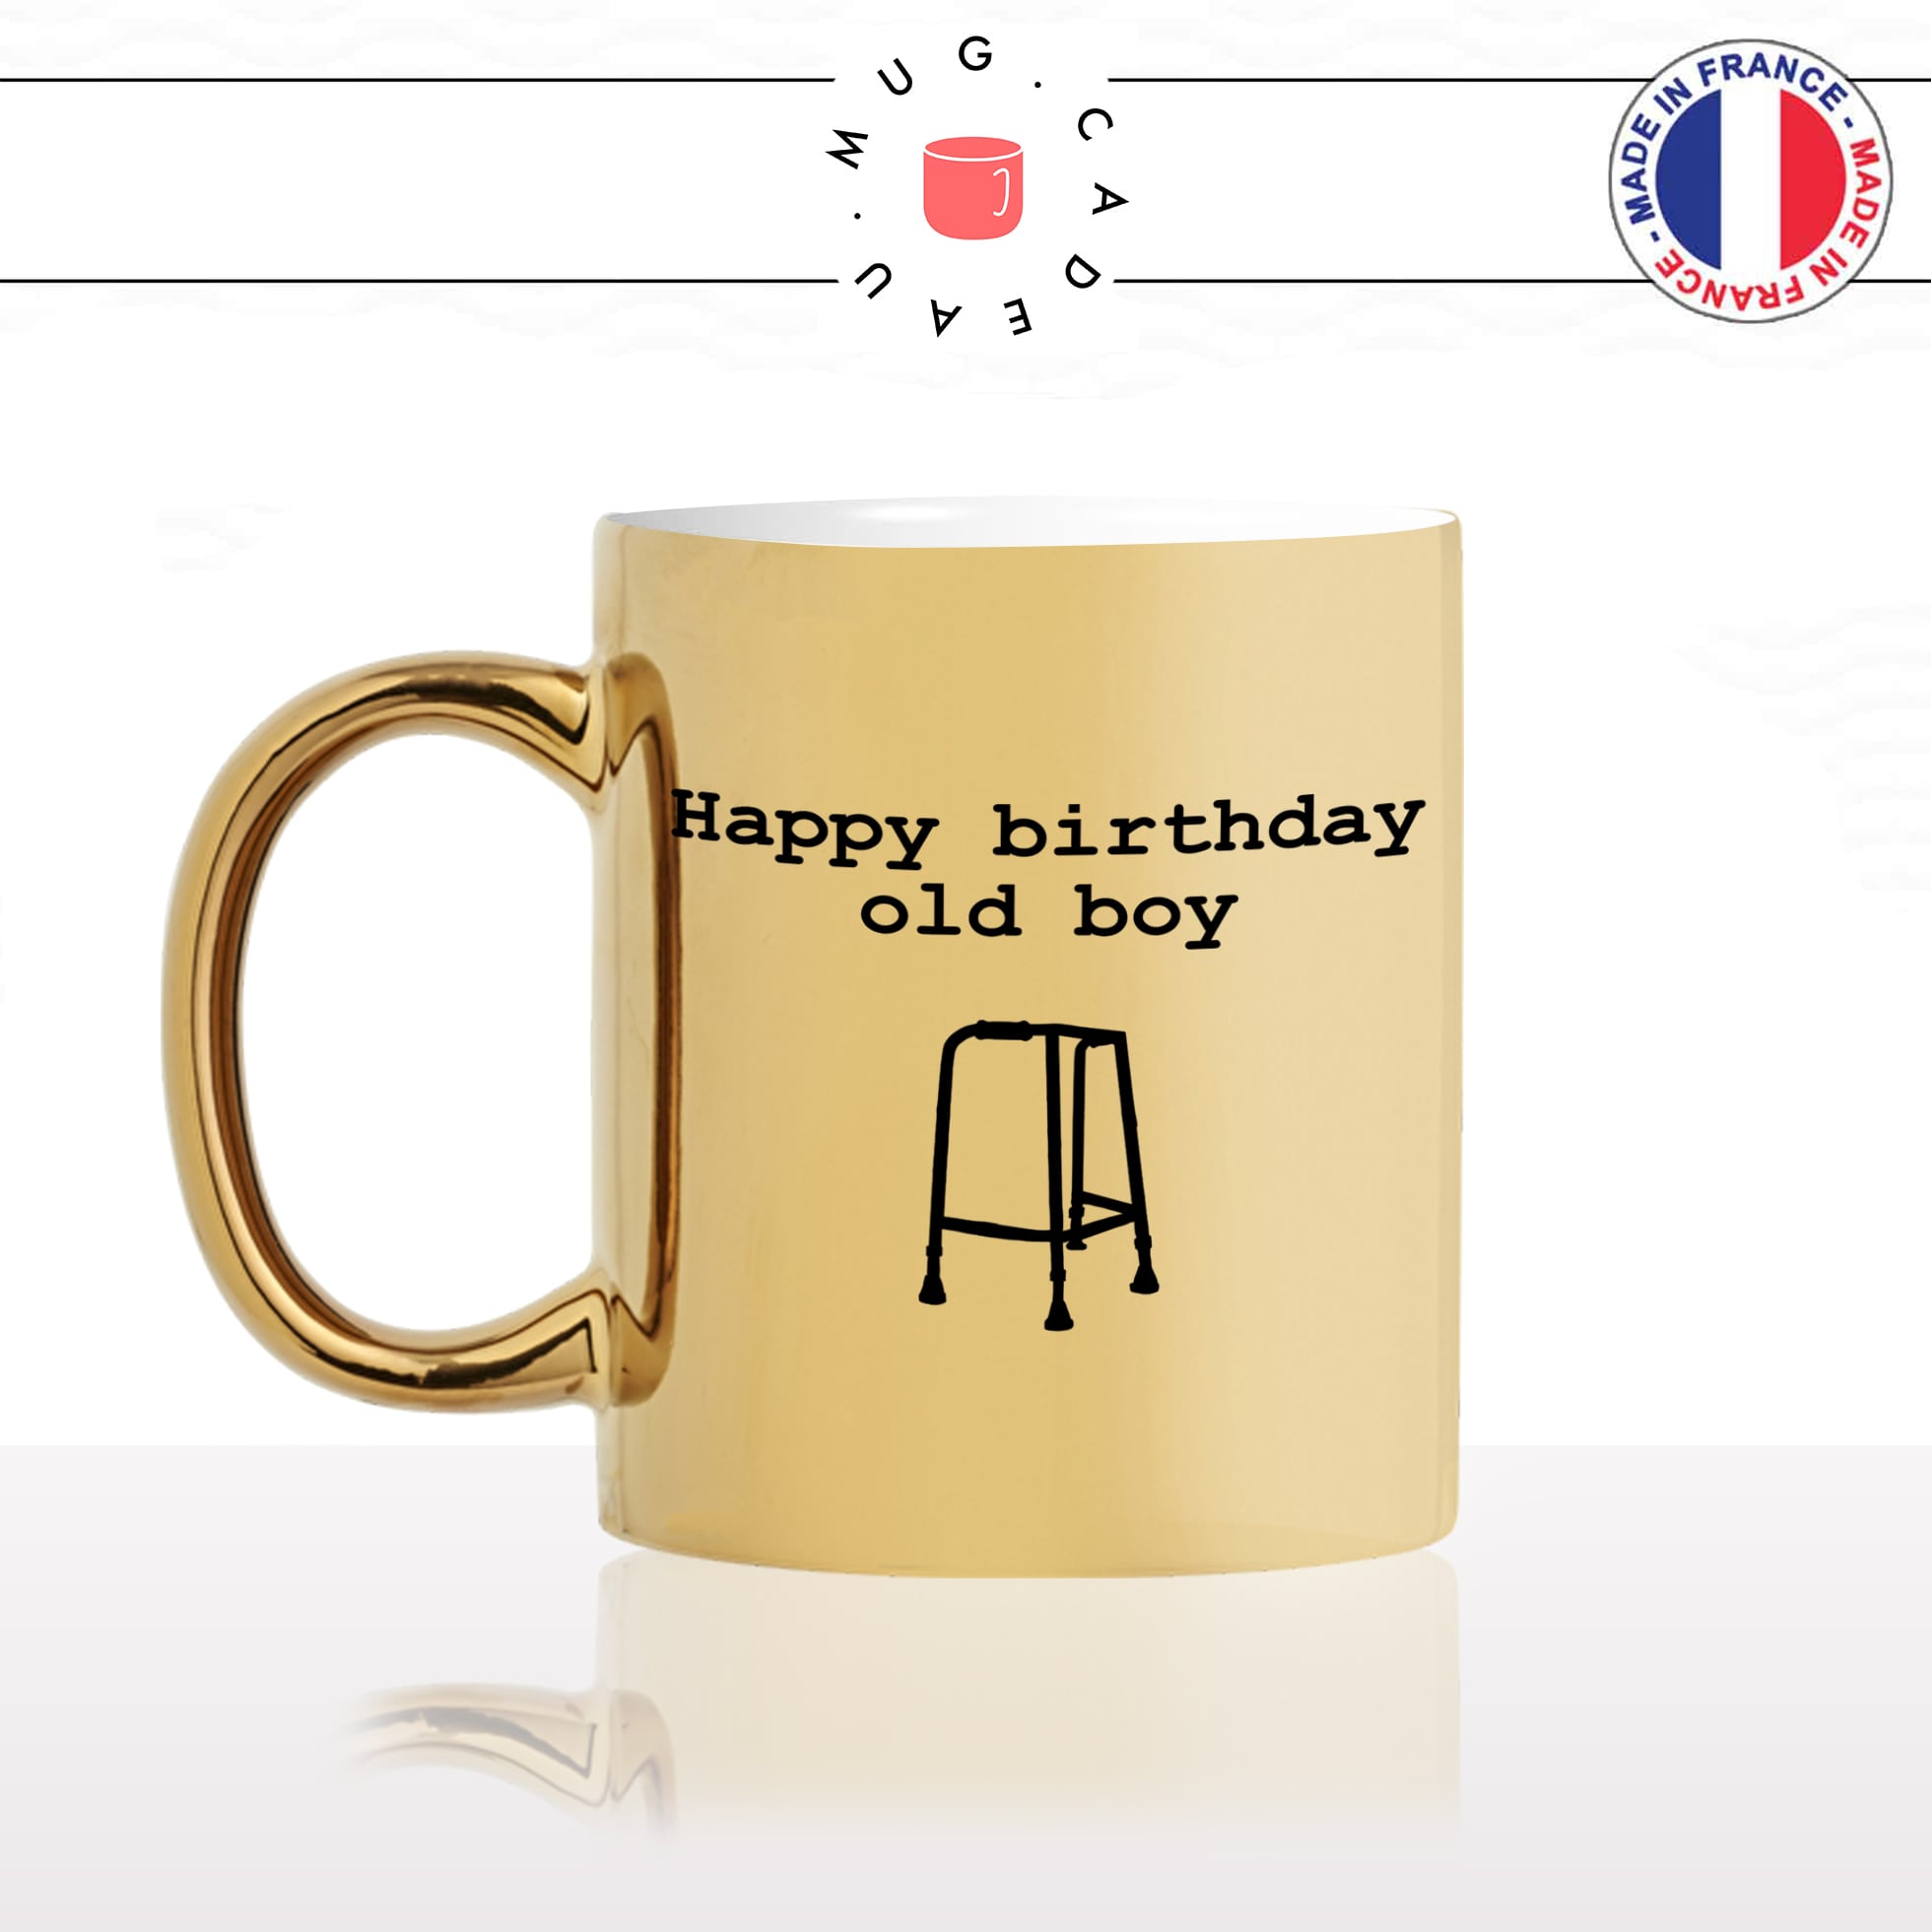 mug-tasse-gold-or-doré-anniversaire-happy-birthday-old-boy-vieux-deambulateur-humour-cool-fun-original-idée-cadeau-personnalisé-café-thé-min